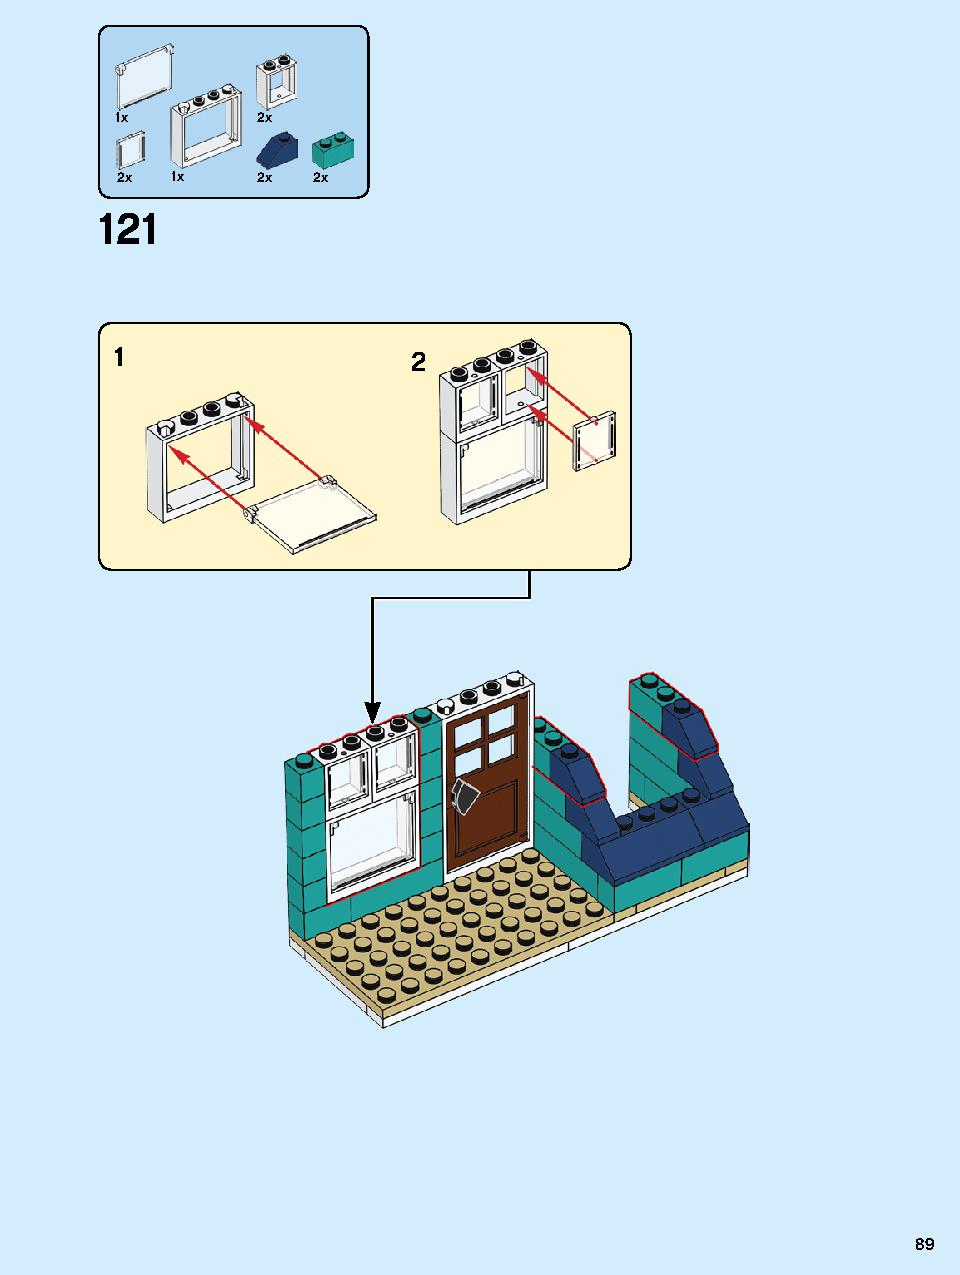 本屋さん 10270 レゴの商品情報 レゴの説明書・組立方法 89 page